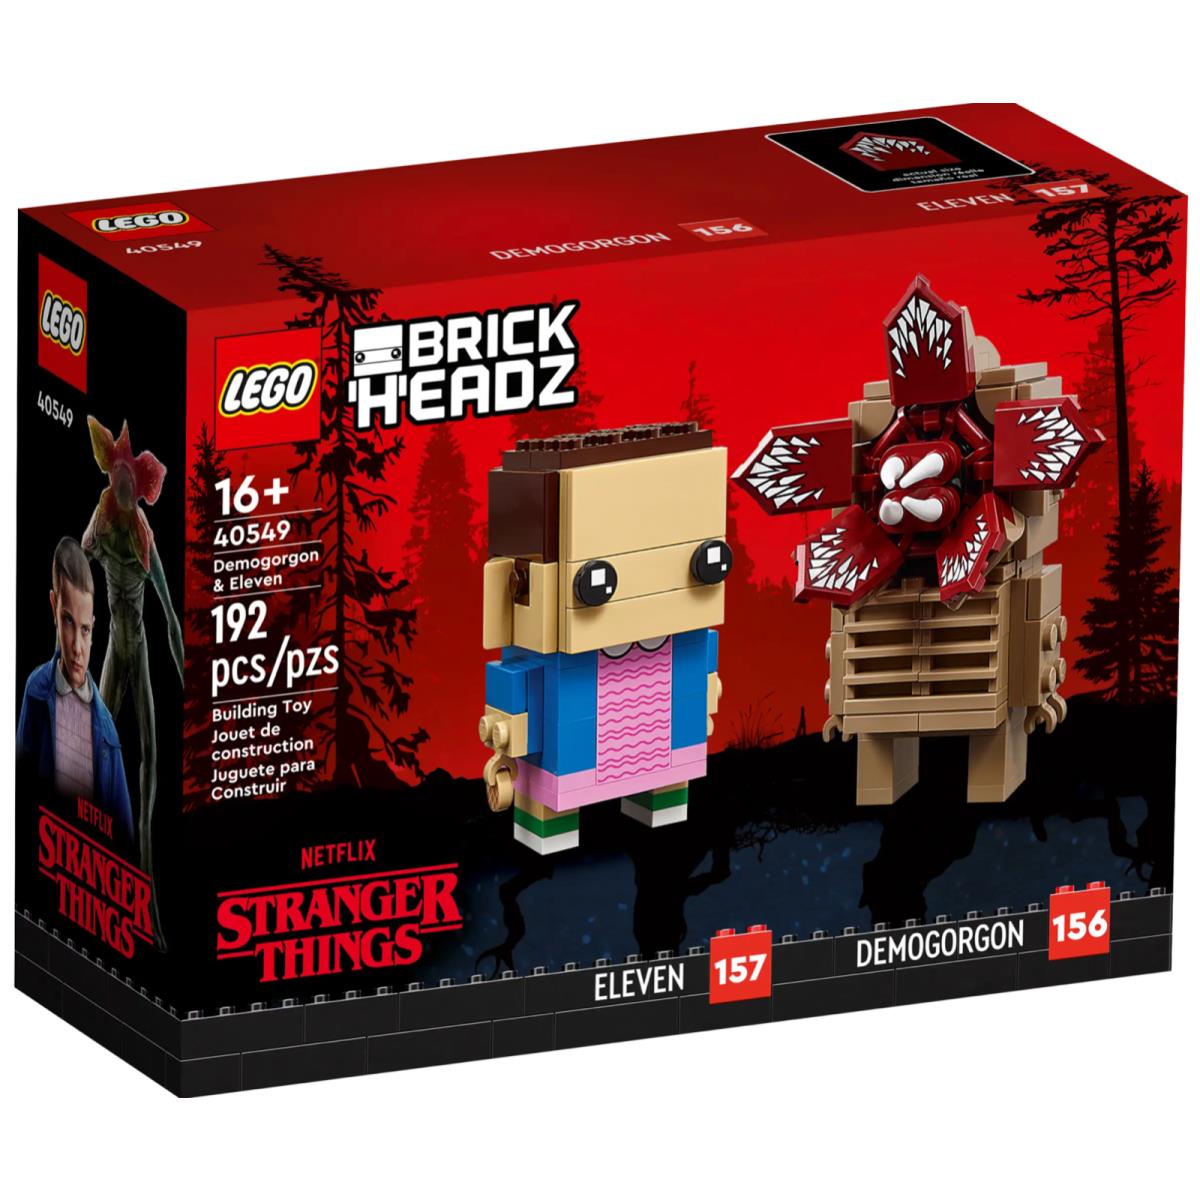 Lego 40459 Stranger Things Demogorgon Eleven Brickheadz Retired